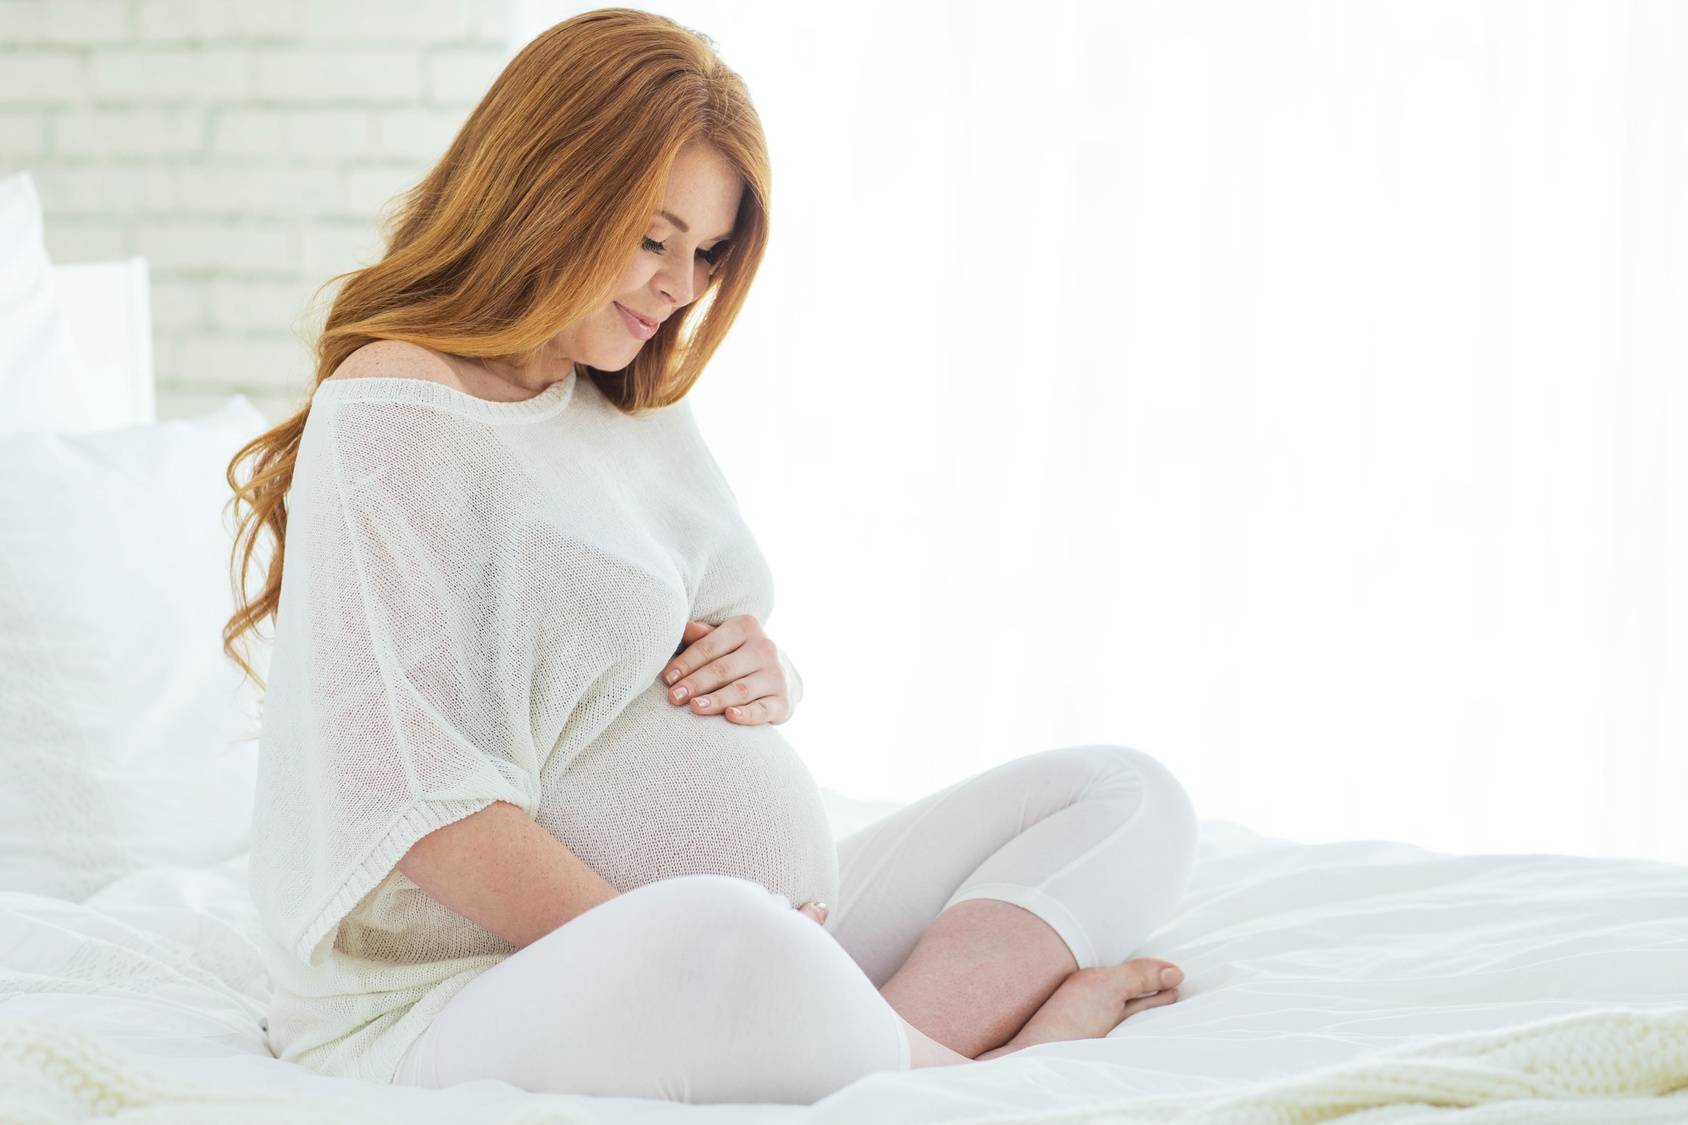 Ciąża po 40-tce - jak się dobrze przygotować do późnego macierzyństwa i jak pomóc sobie zajść w późną ciążę? Rudowłosa kobieta w zaawansowanej ciąży w białym luźnym ubraniu siedzi na łóżku na białej pościeli.